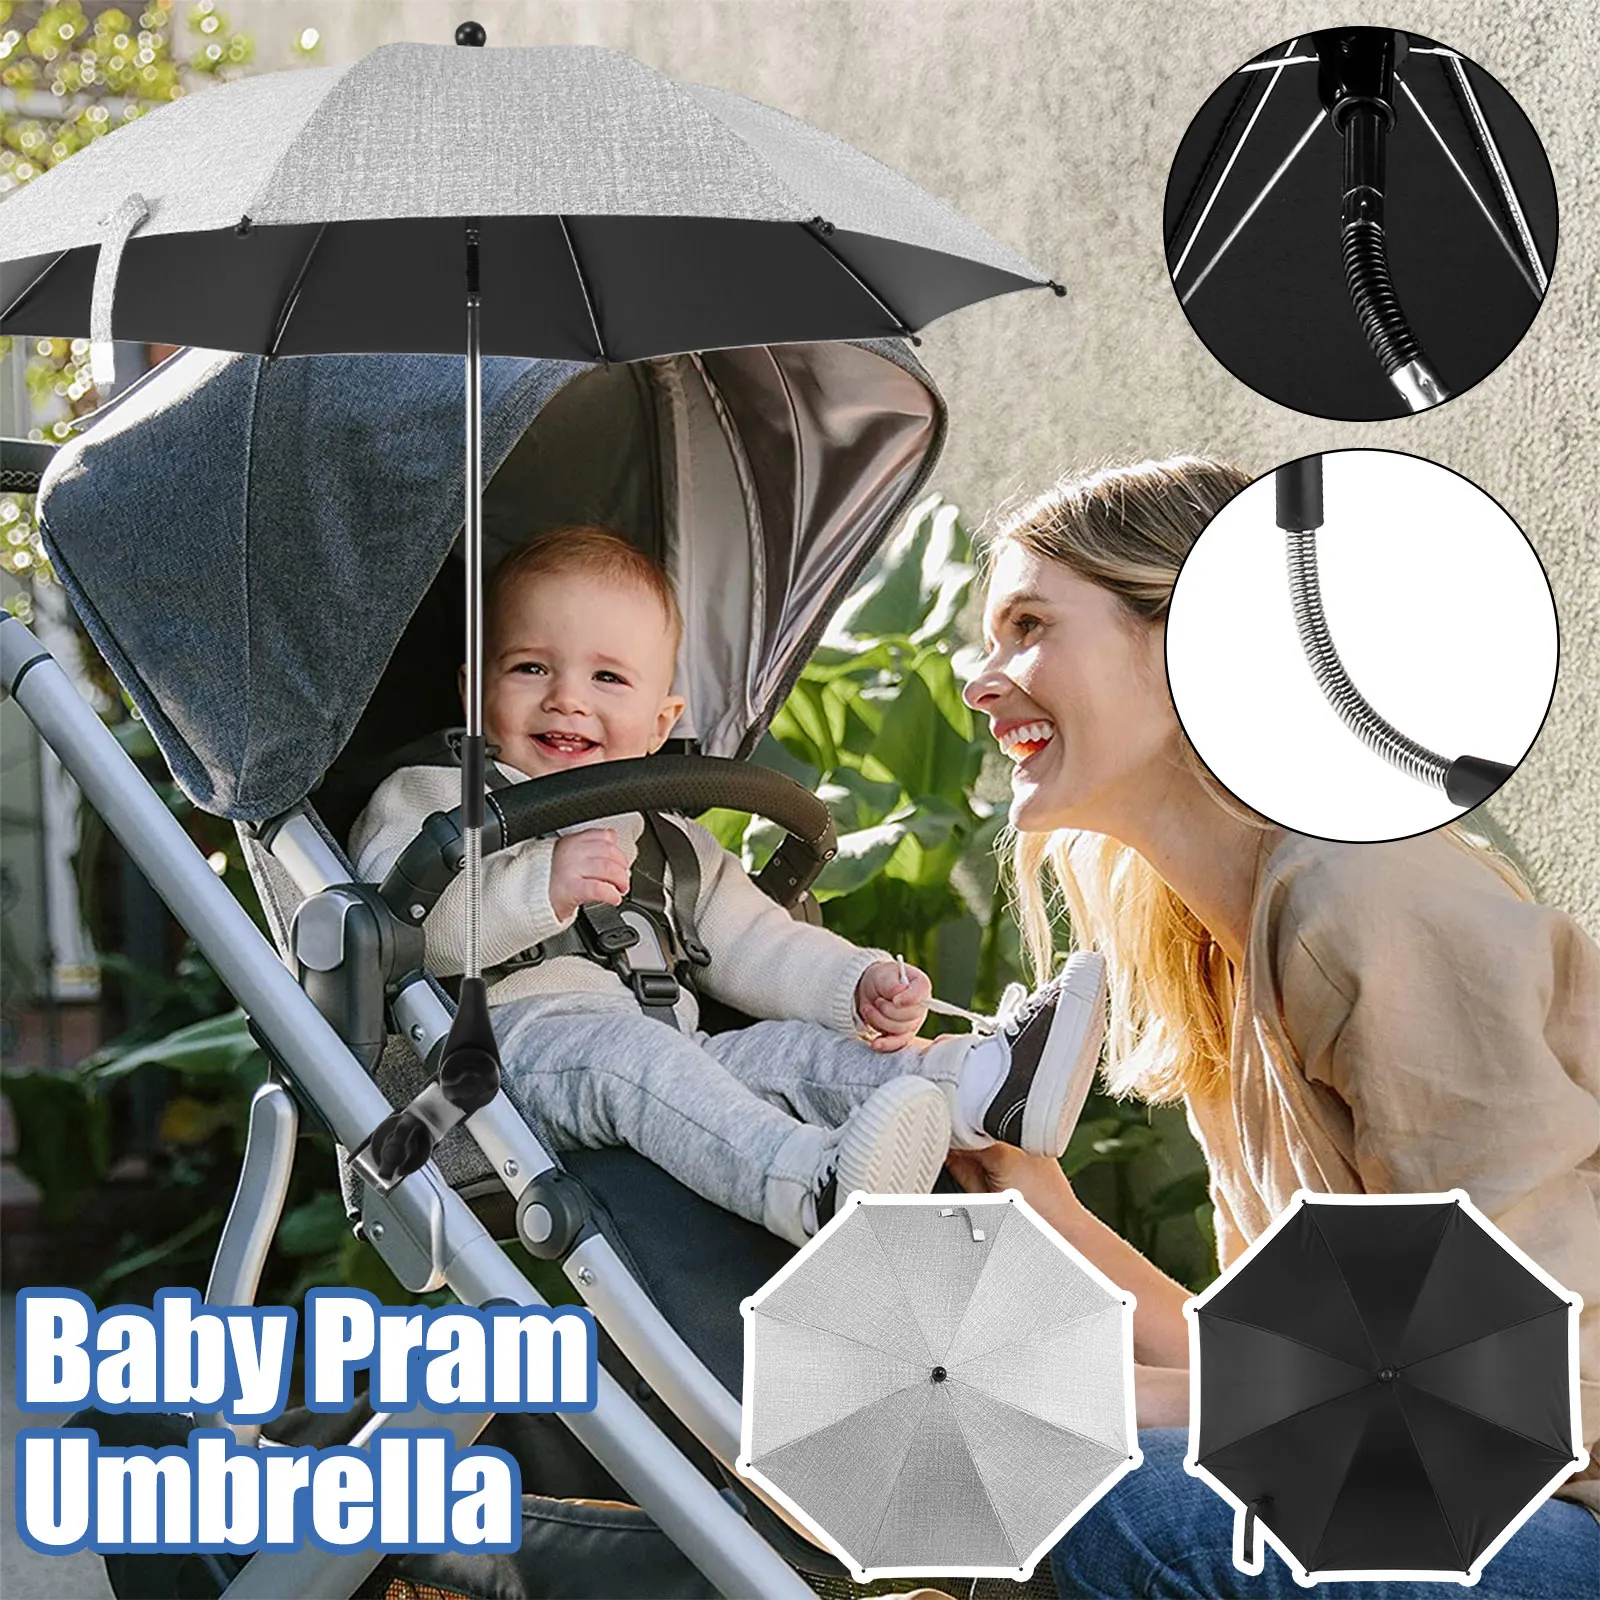 

Зонт для детской коляски с зажимом, диаметр 85 см, зонт для детской коляски, регулируемый зонт для детской коляски на 360 °, водонепроницаемый зонт для детской коляски